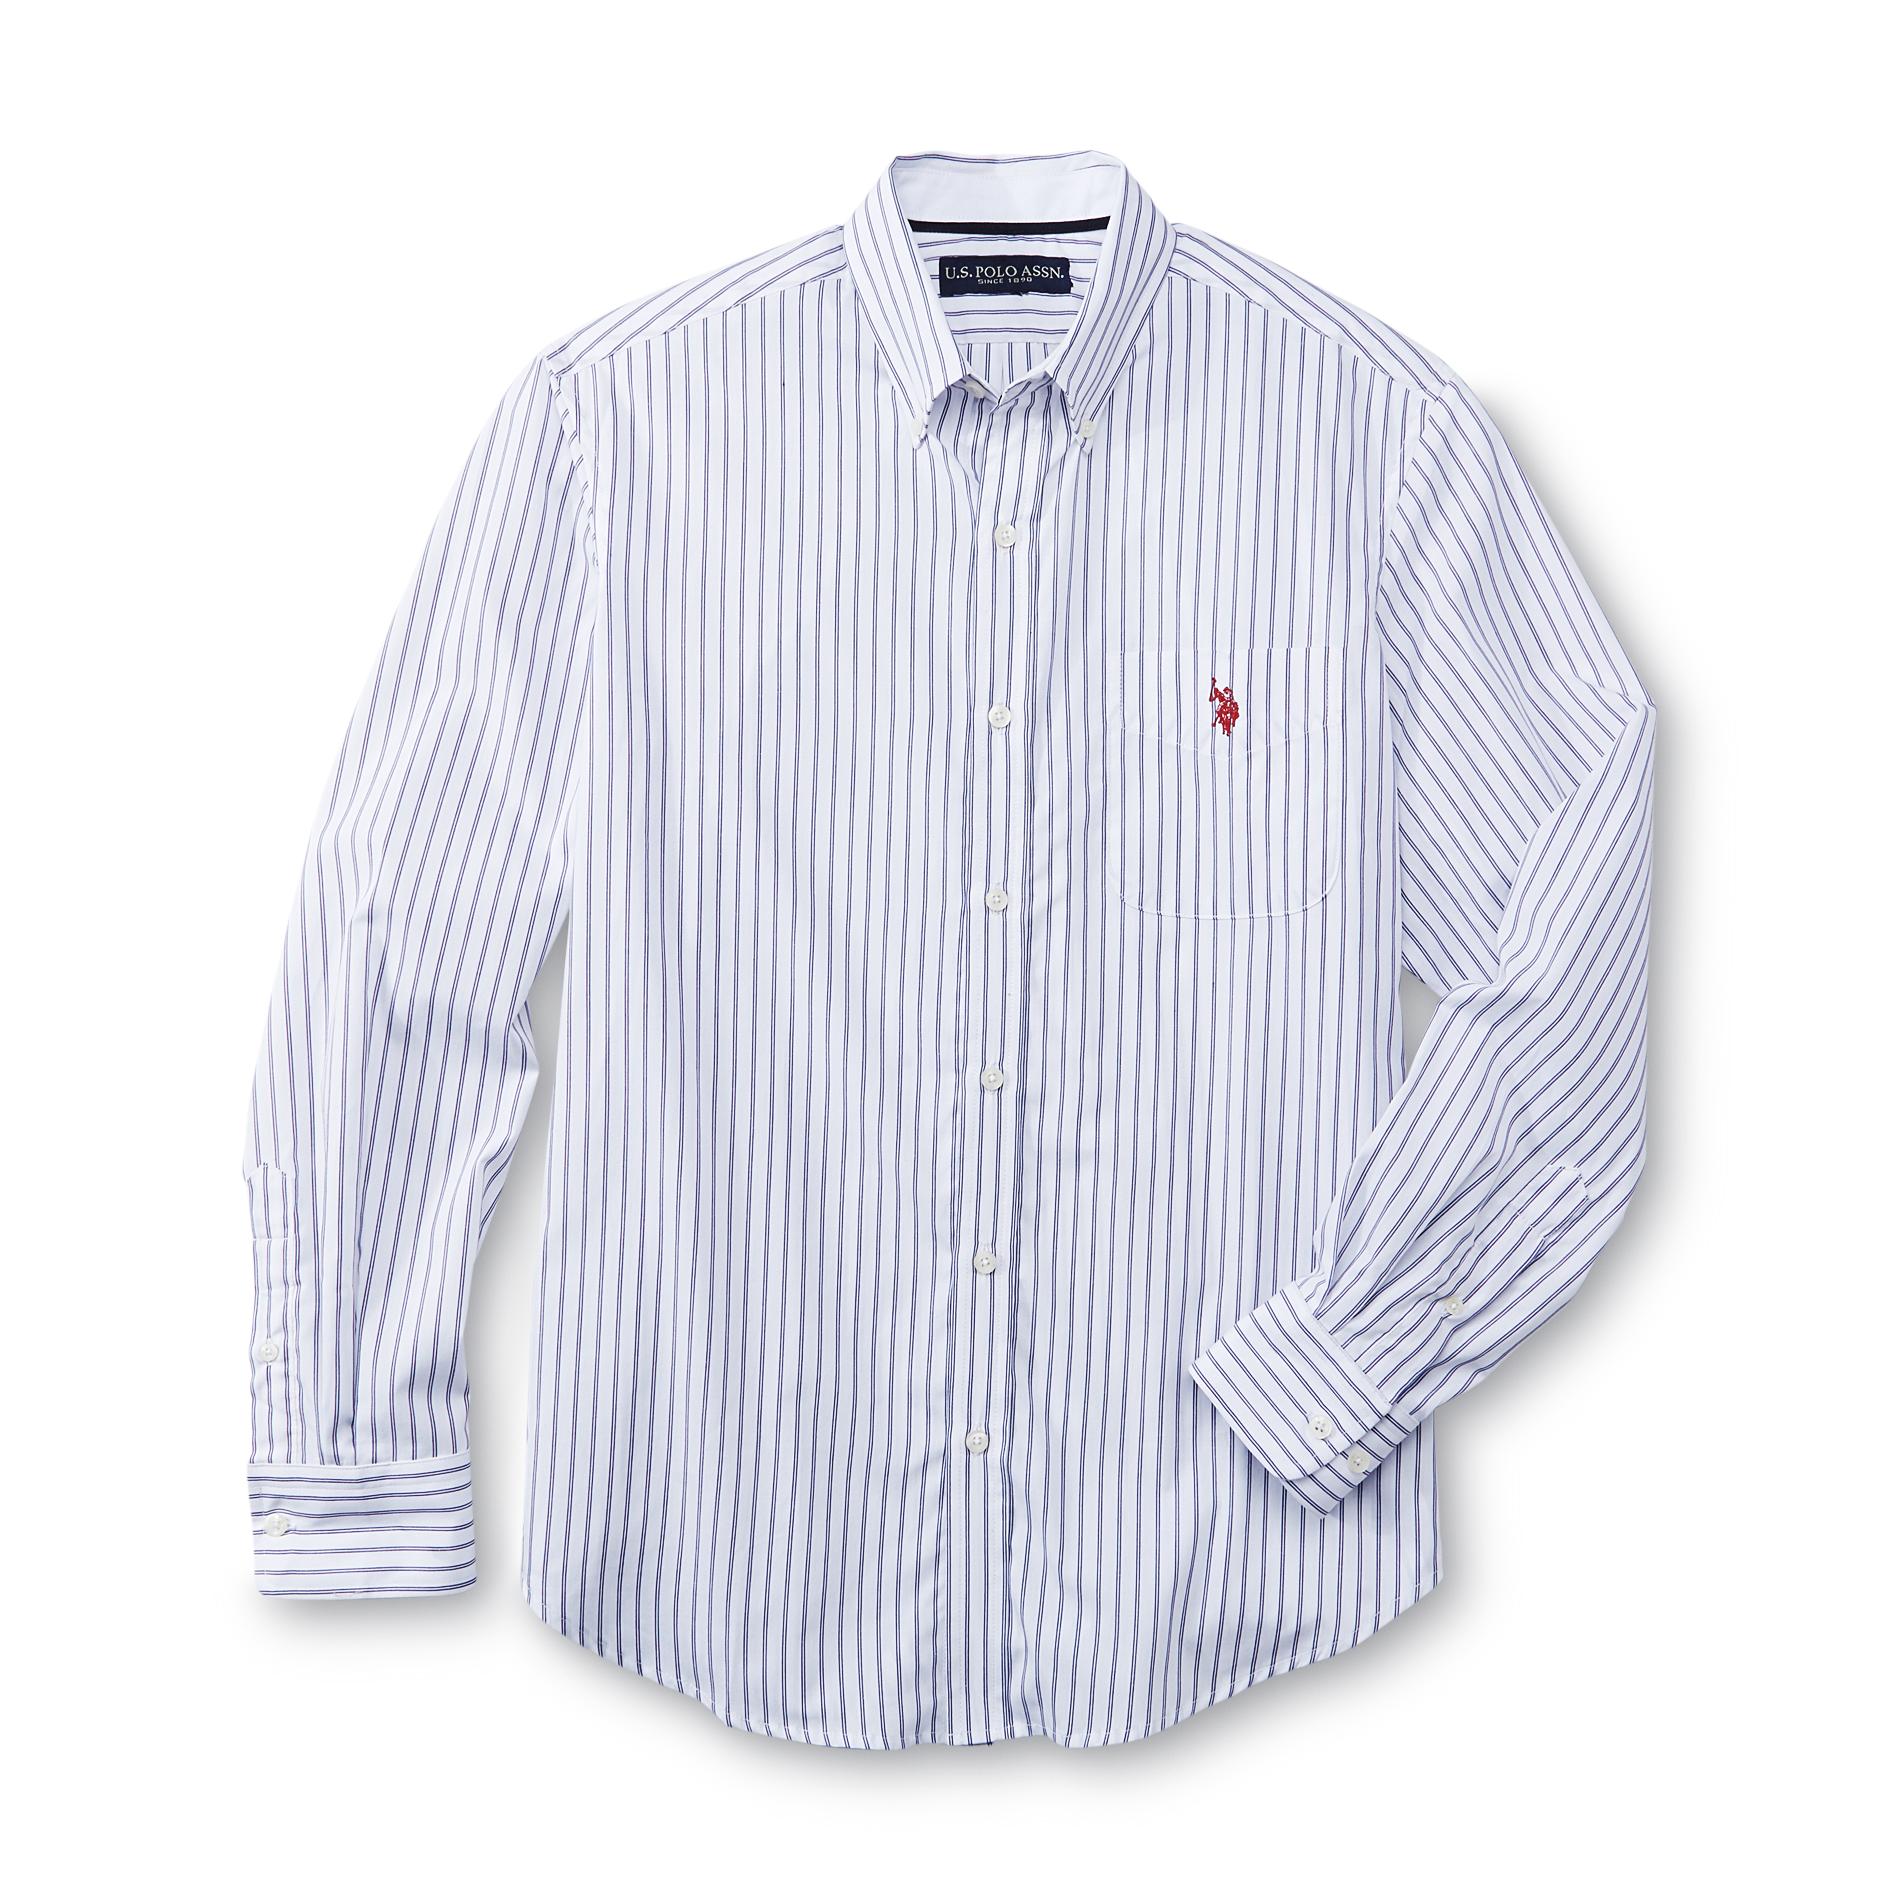 U.S. Polo Assn. Men's Long-Sleeve Dress Shirt - Striped